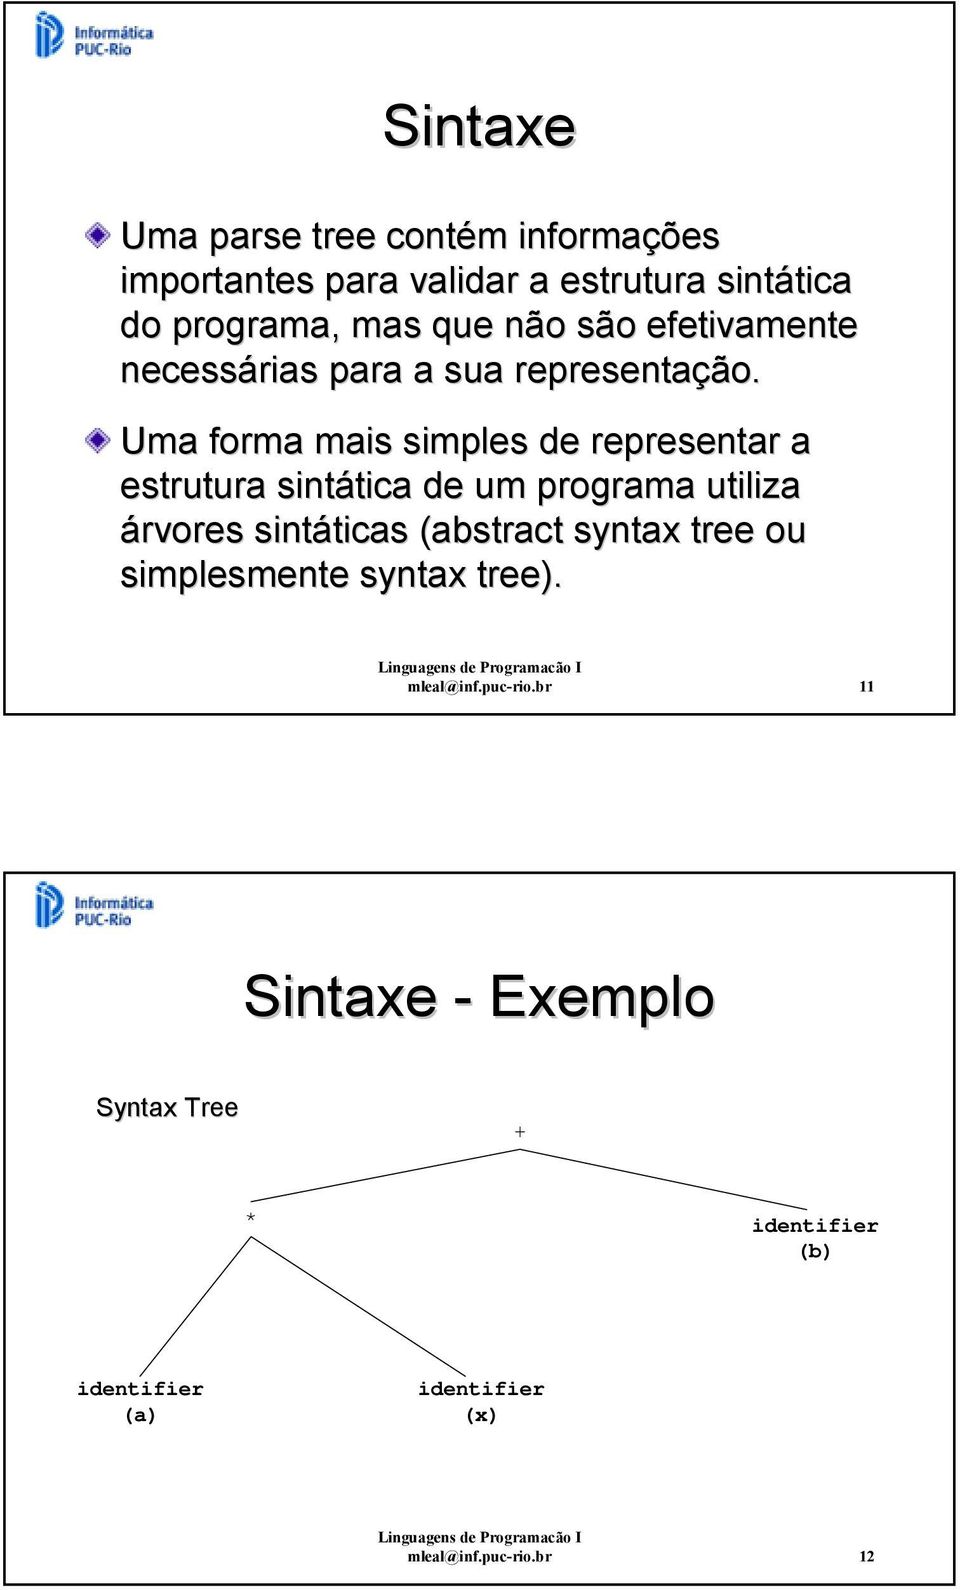 Uma forma mais simples de representar a estrutura sintática de um programa utiliza árvores sintáticas